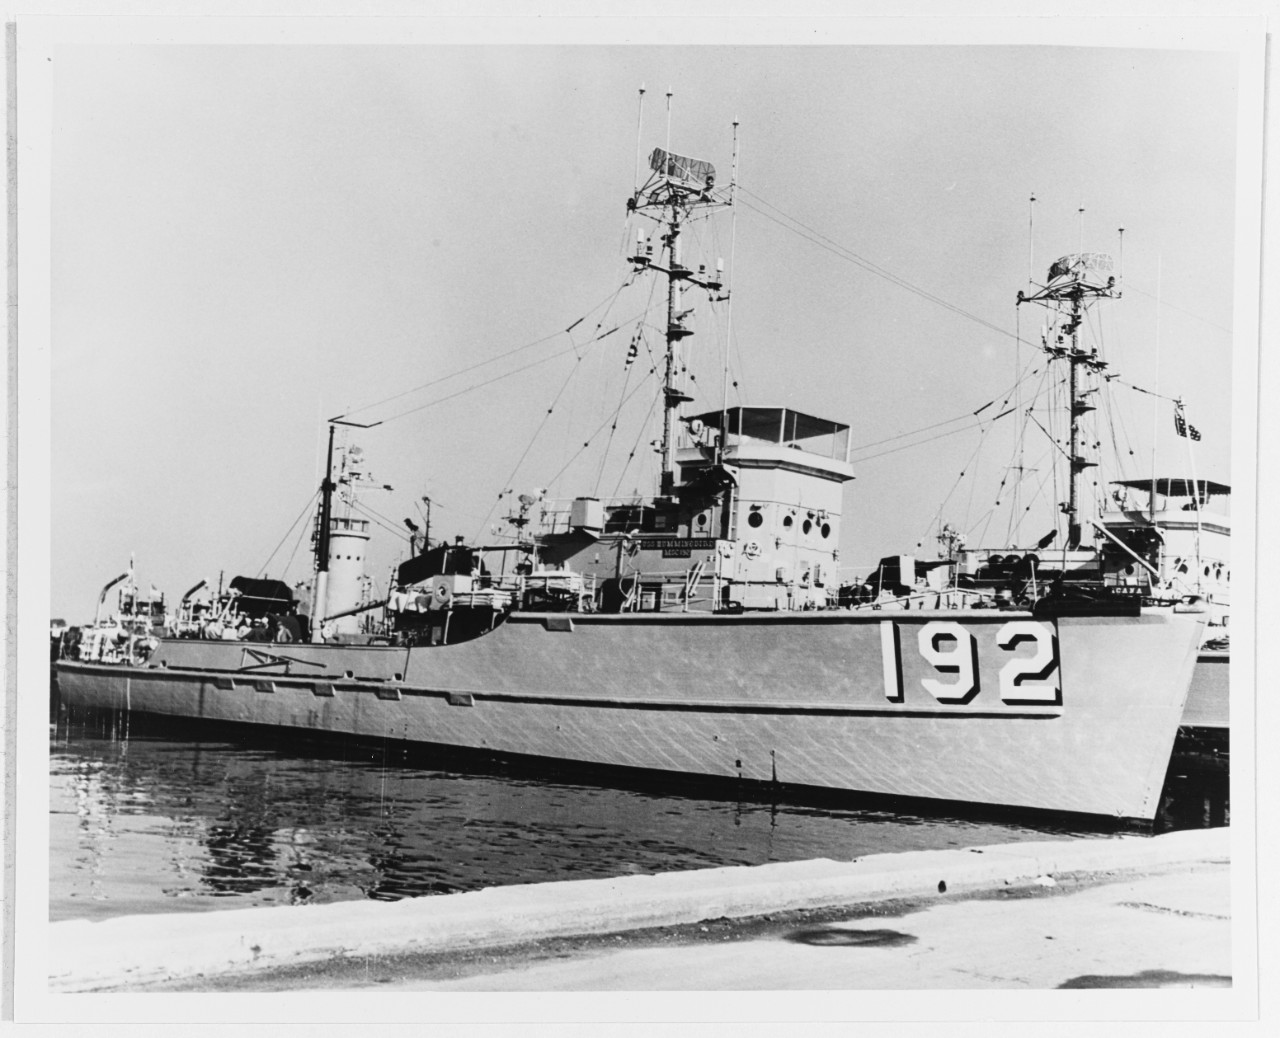 USS HUMMINGBIRD (MSC-192)